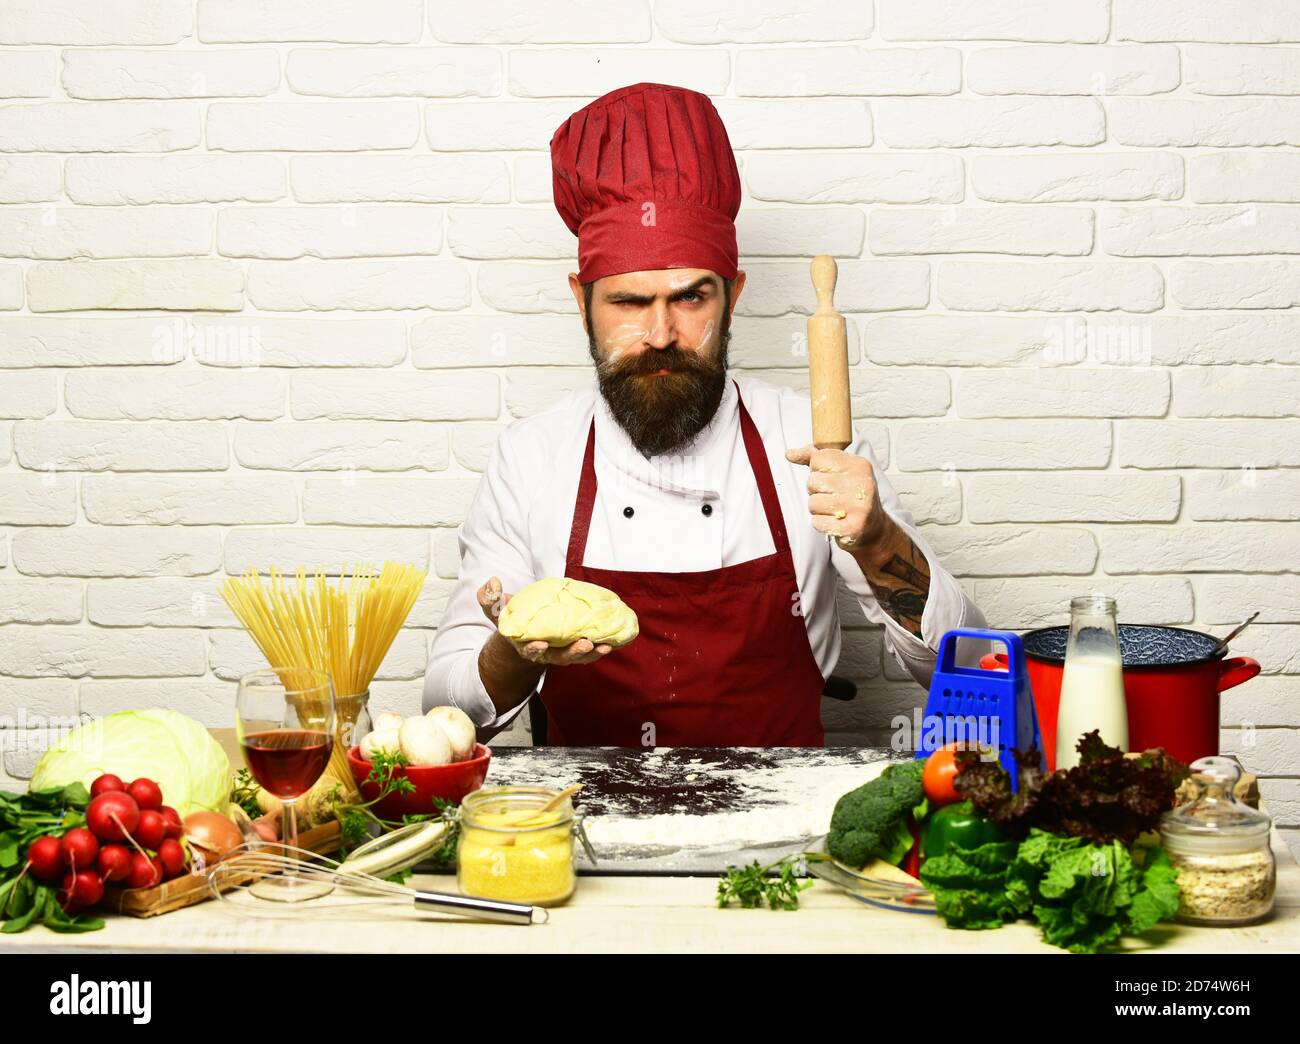 Le chef prépare de la pâte. Concept de cuisine italienne. Homme avec barbe  tient la pâte et la broche sur fond de brique blanche. Cuire avec le visage  strict en uniforme bordeaux